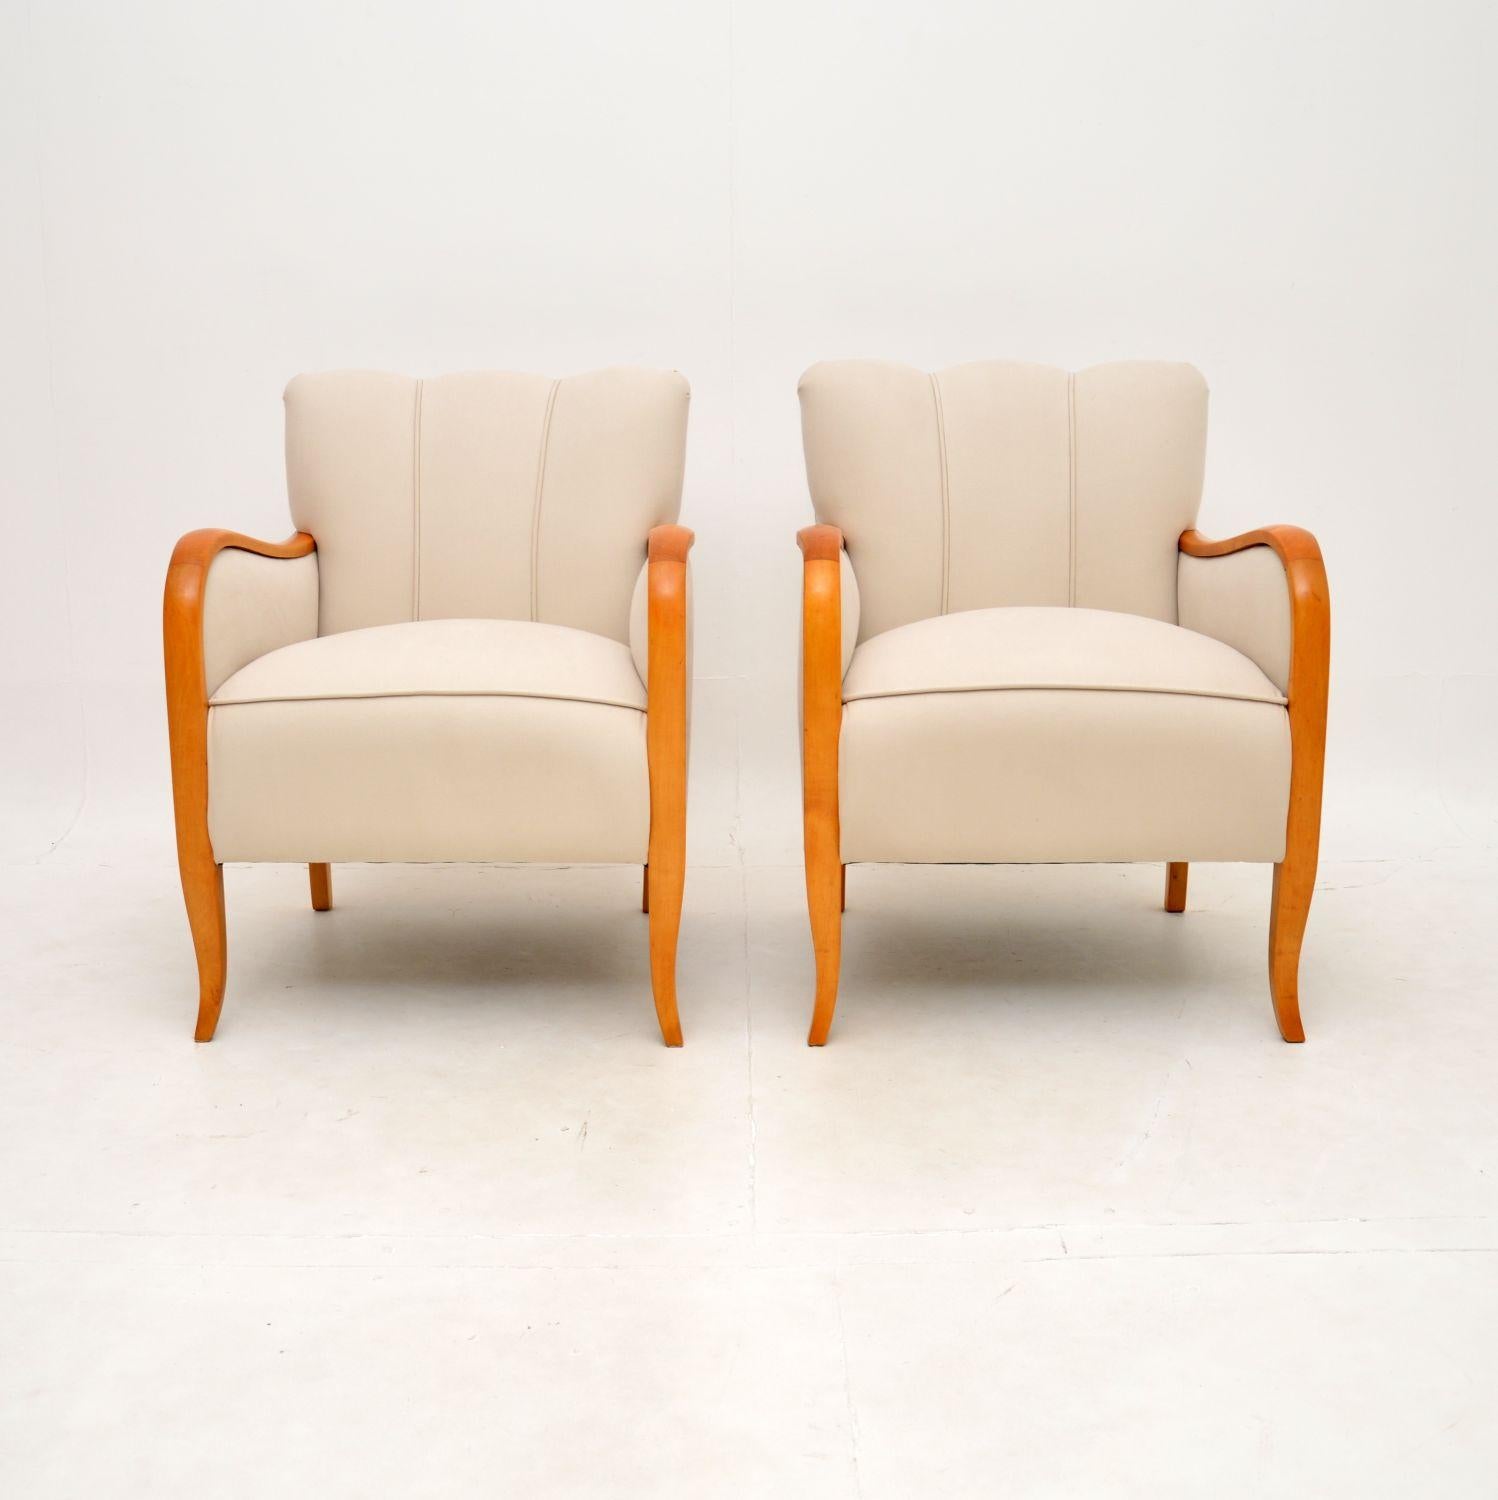 Ein sehr stilvolles und extrem gut gemachtes Paar Art-Deco-Sessel in satinierter Birke. Sie wurden kürzlich aus Schweden importiert und stammen aus den 1920er Jahren.

Sie haben schöne Proportionen und sind sehr bequem. Die Qualität ist erstaunlich,